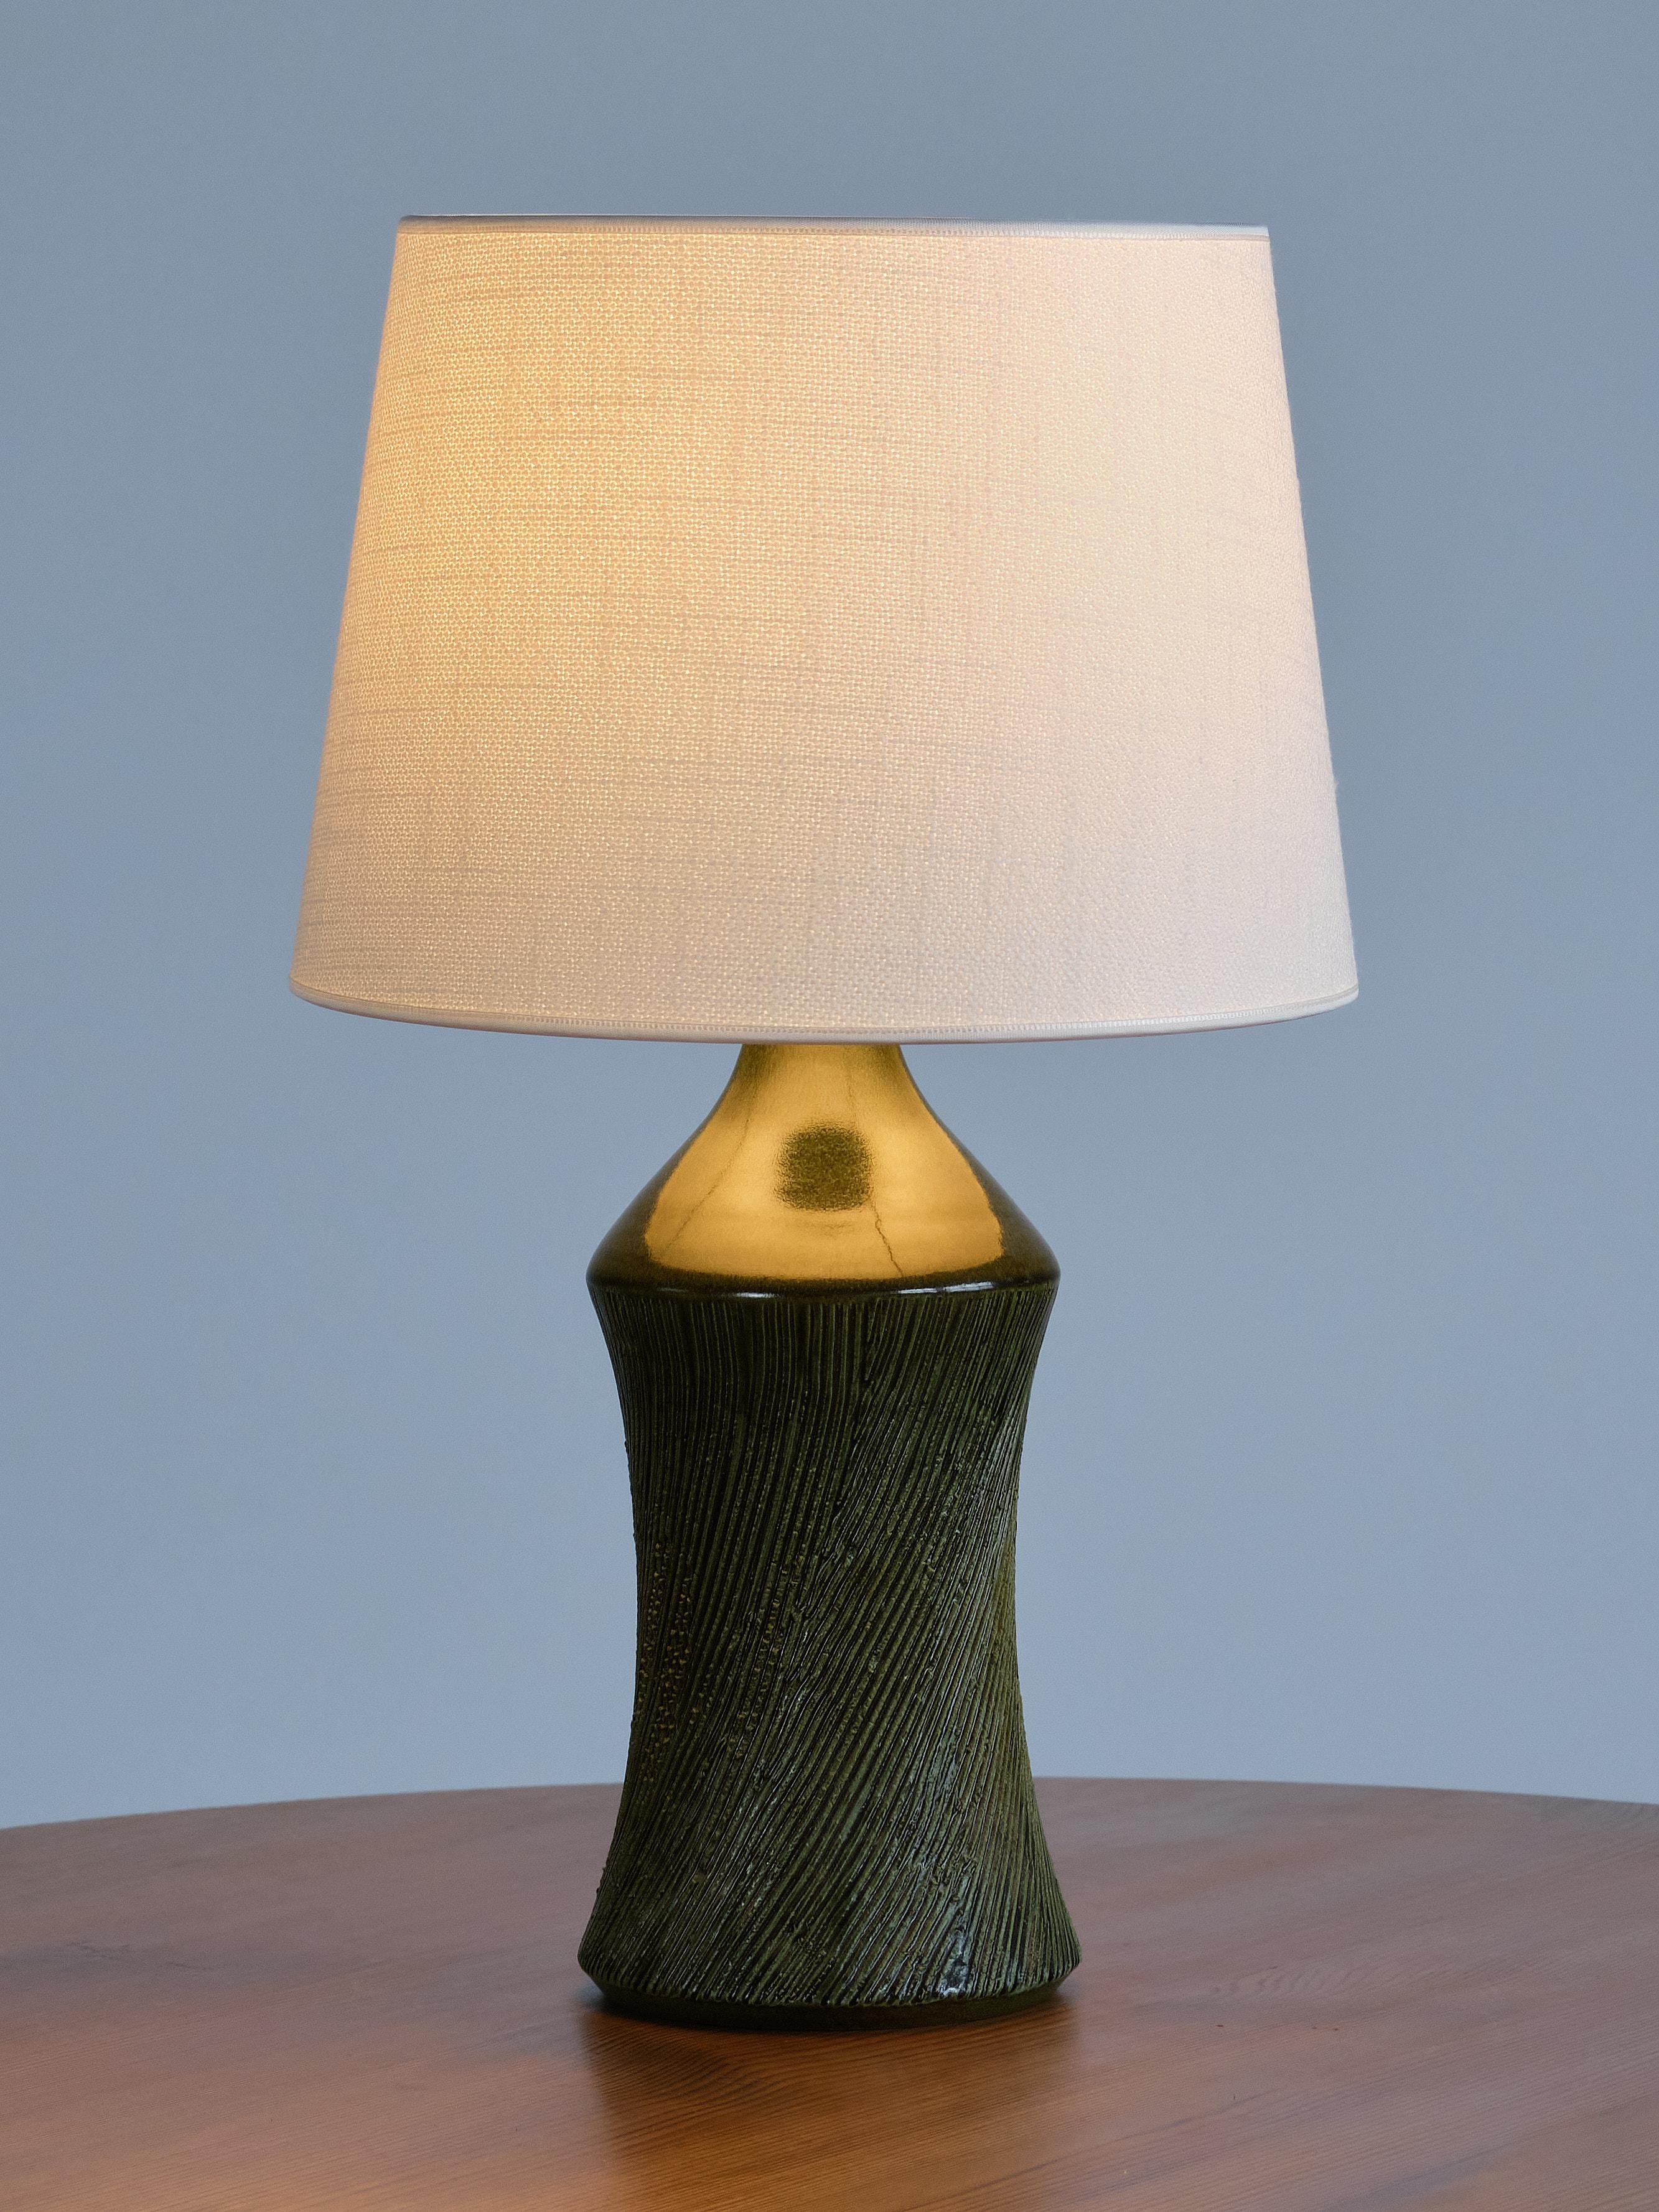 Henry Brandi Green Ceramic Table Lamp, Brandi Vejbystrand, Sweden, 1960s For Sale 2